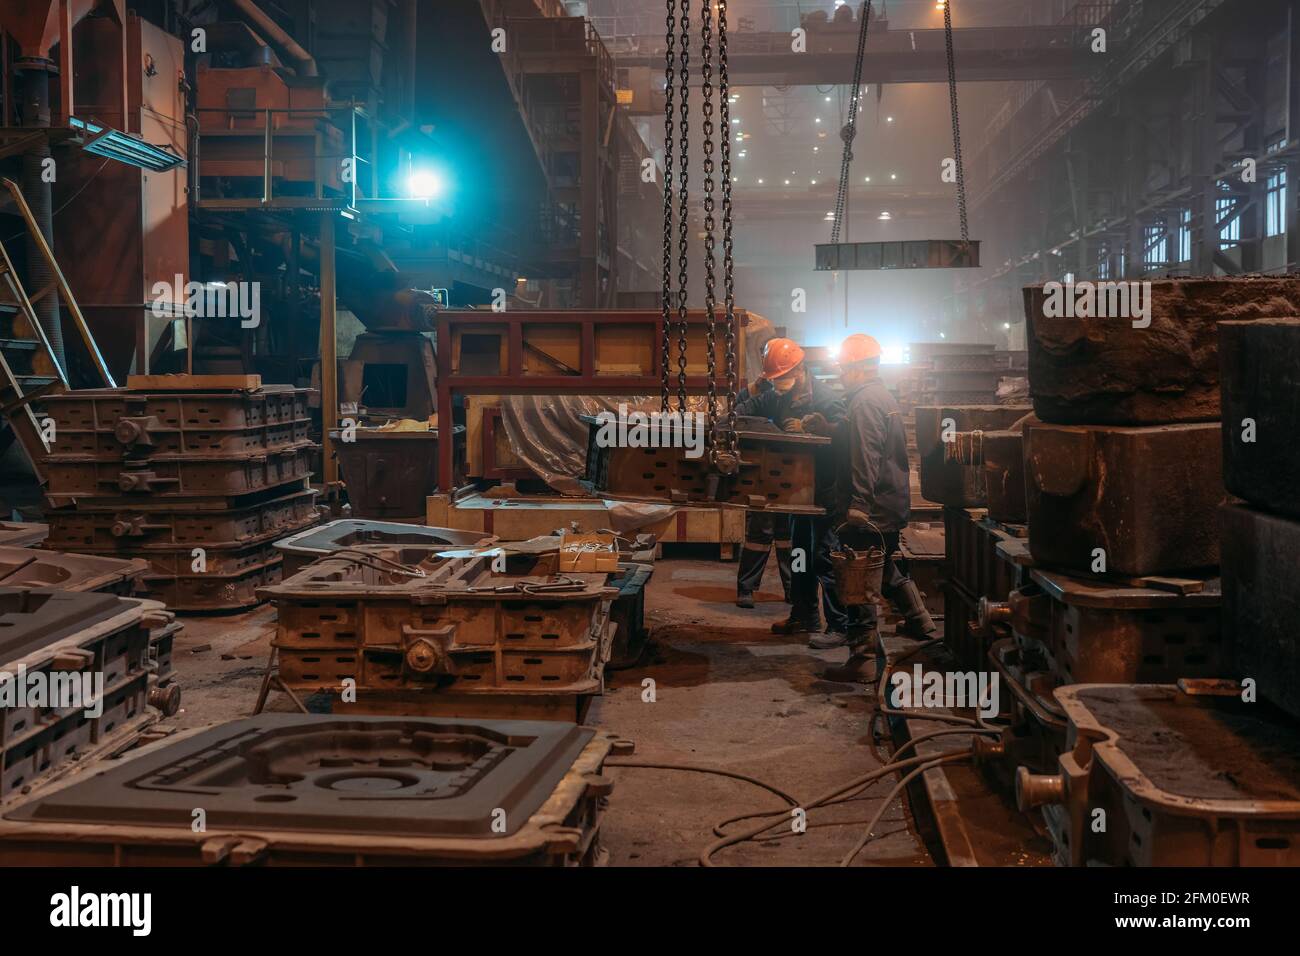 Arbeiter in Helmen und Gesichtsmasken arbeiten nach dem Metallgießen in der Stahlwalzgießerei mit Schimmel an Kranketten. Stockfoto